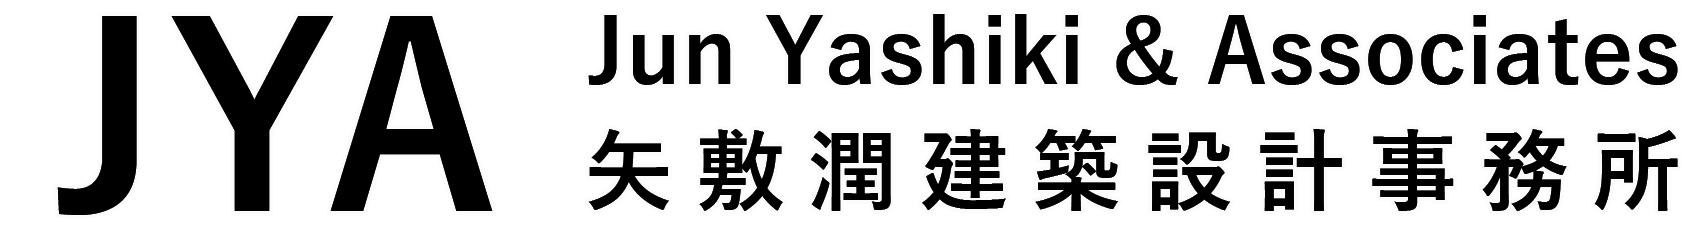 JUN YASHIKI & ASSOCIATES